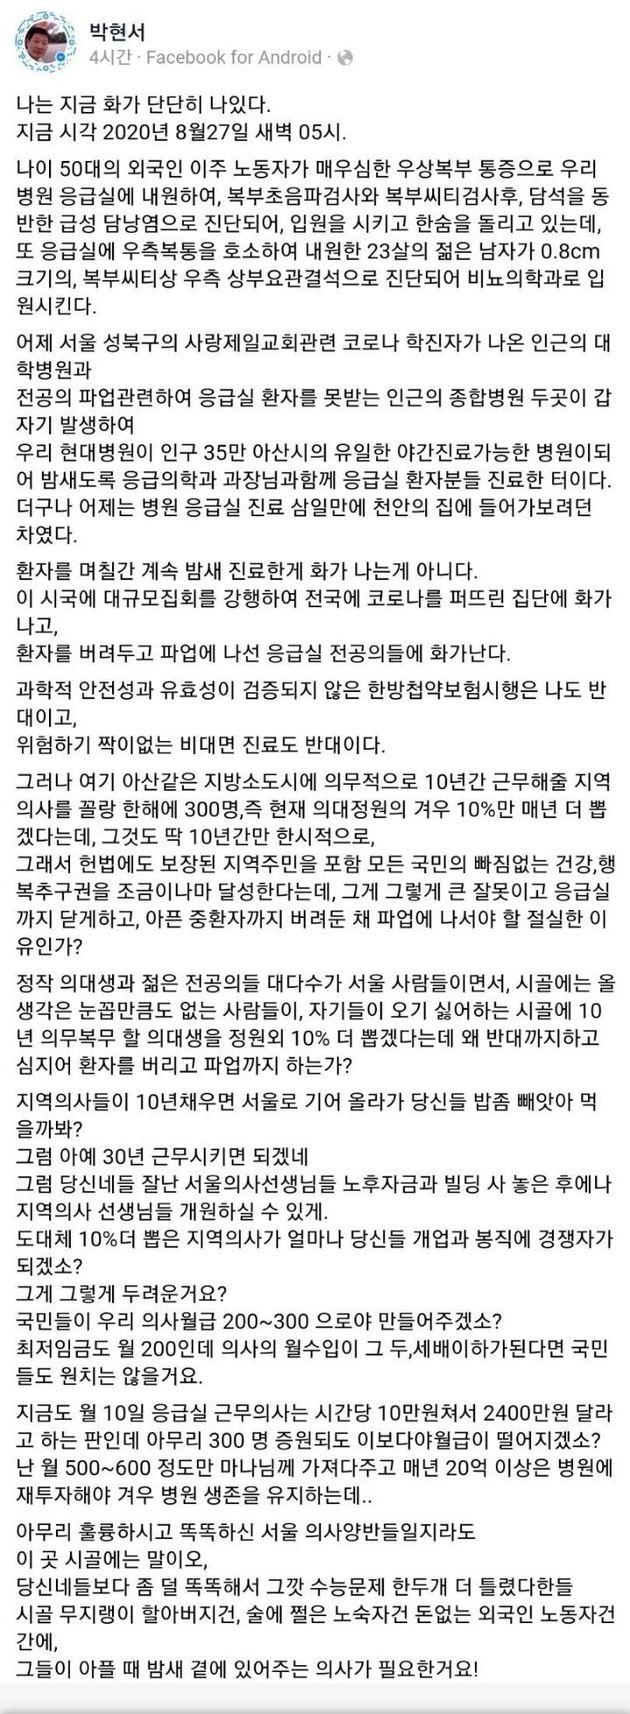 아산 현대병원 박현서 원장이 '집단휴진'과 관련해 올린 페이스북